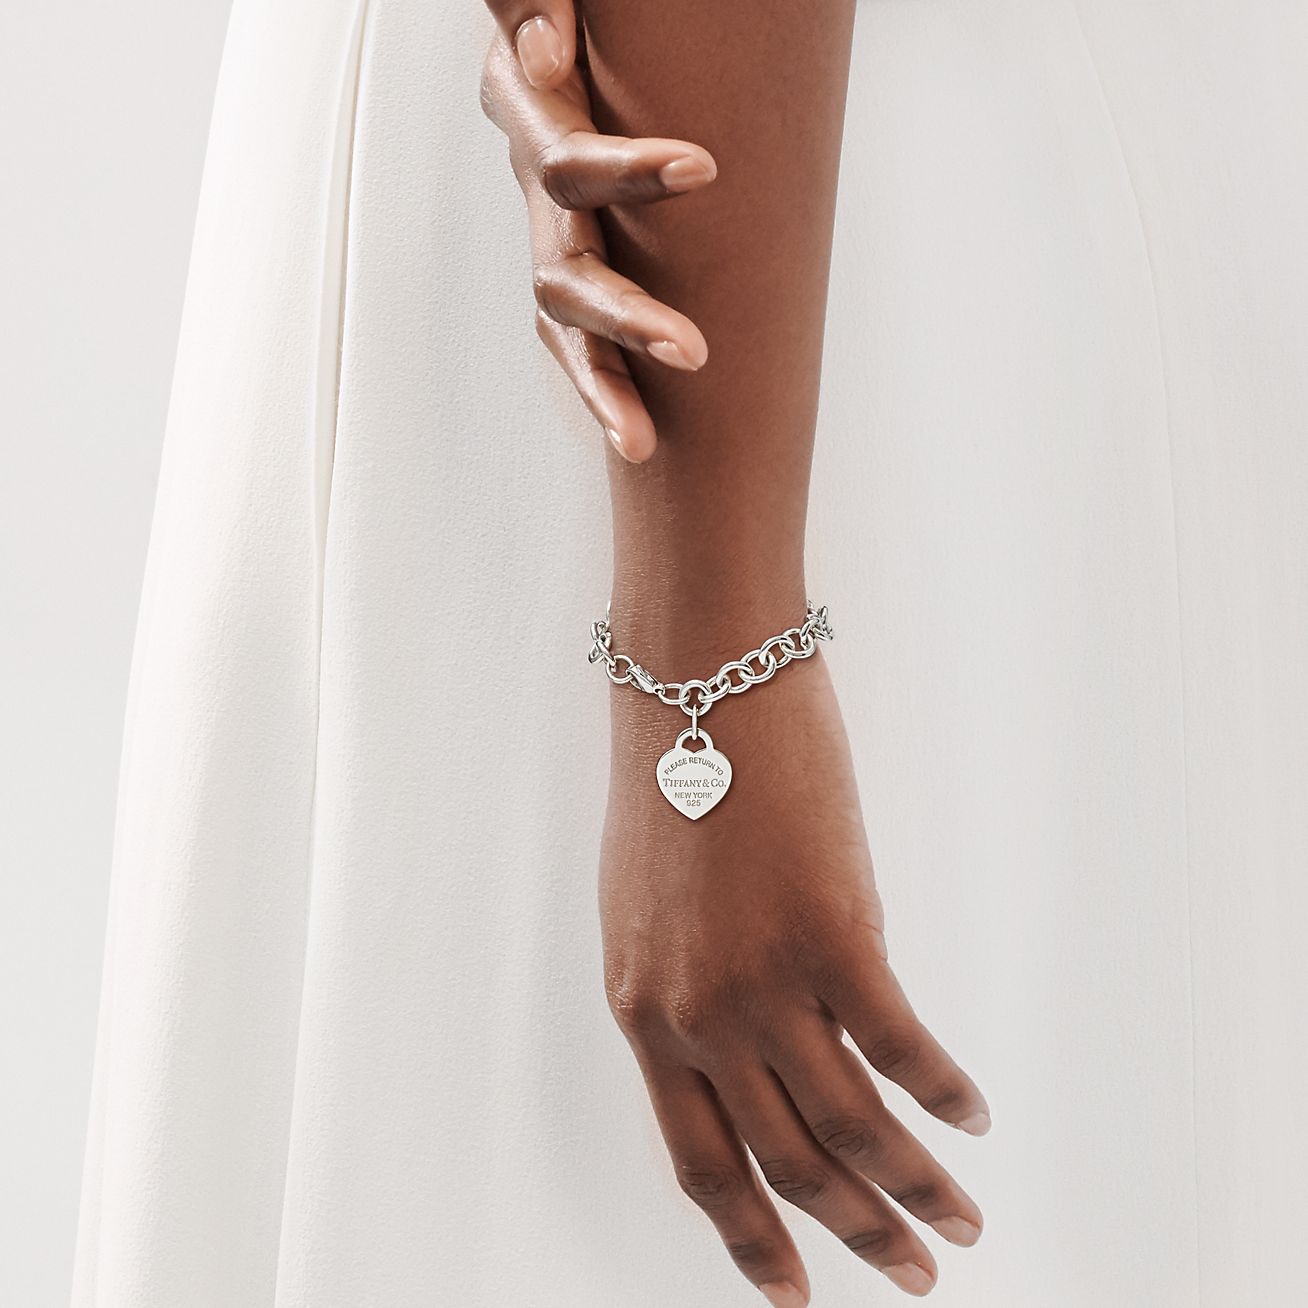 Designer London Links Charms Sterling Silver Bracelet